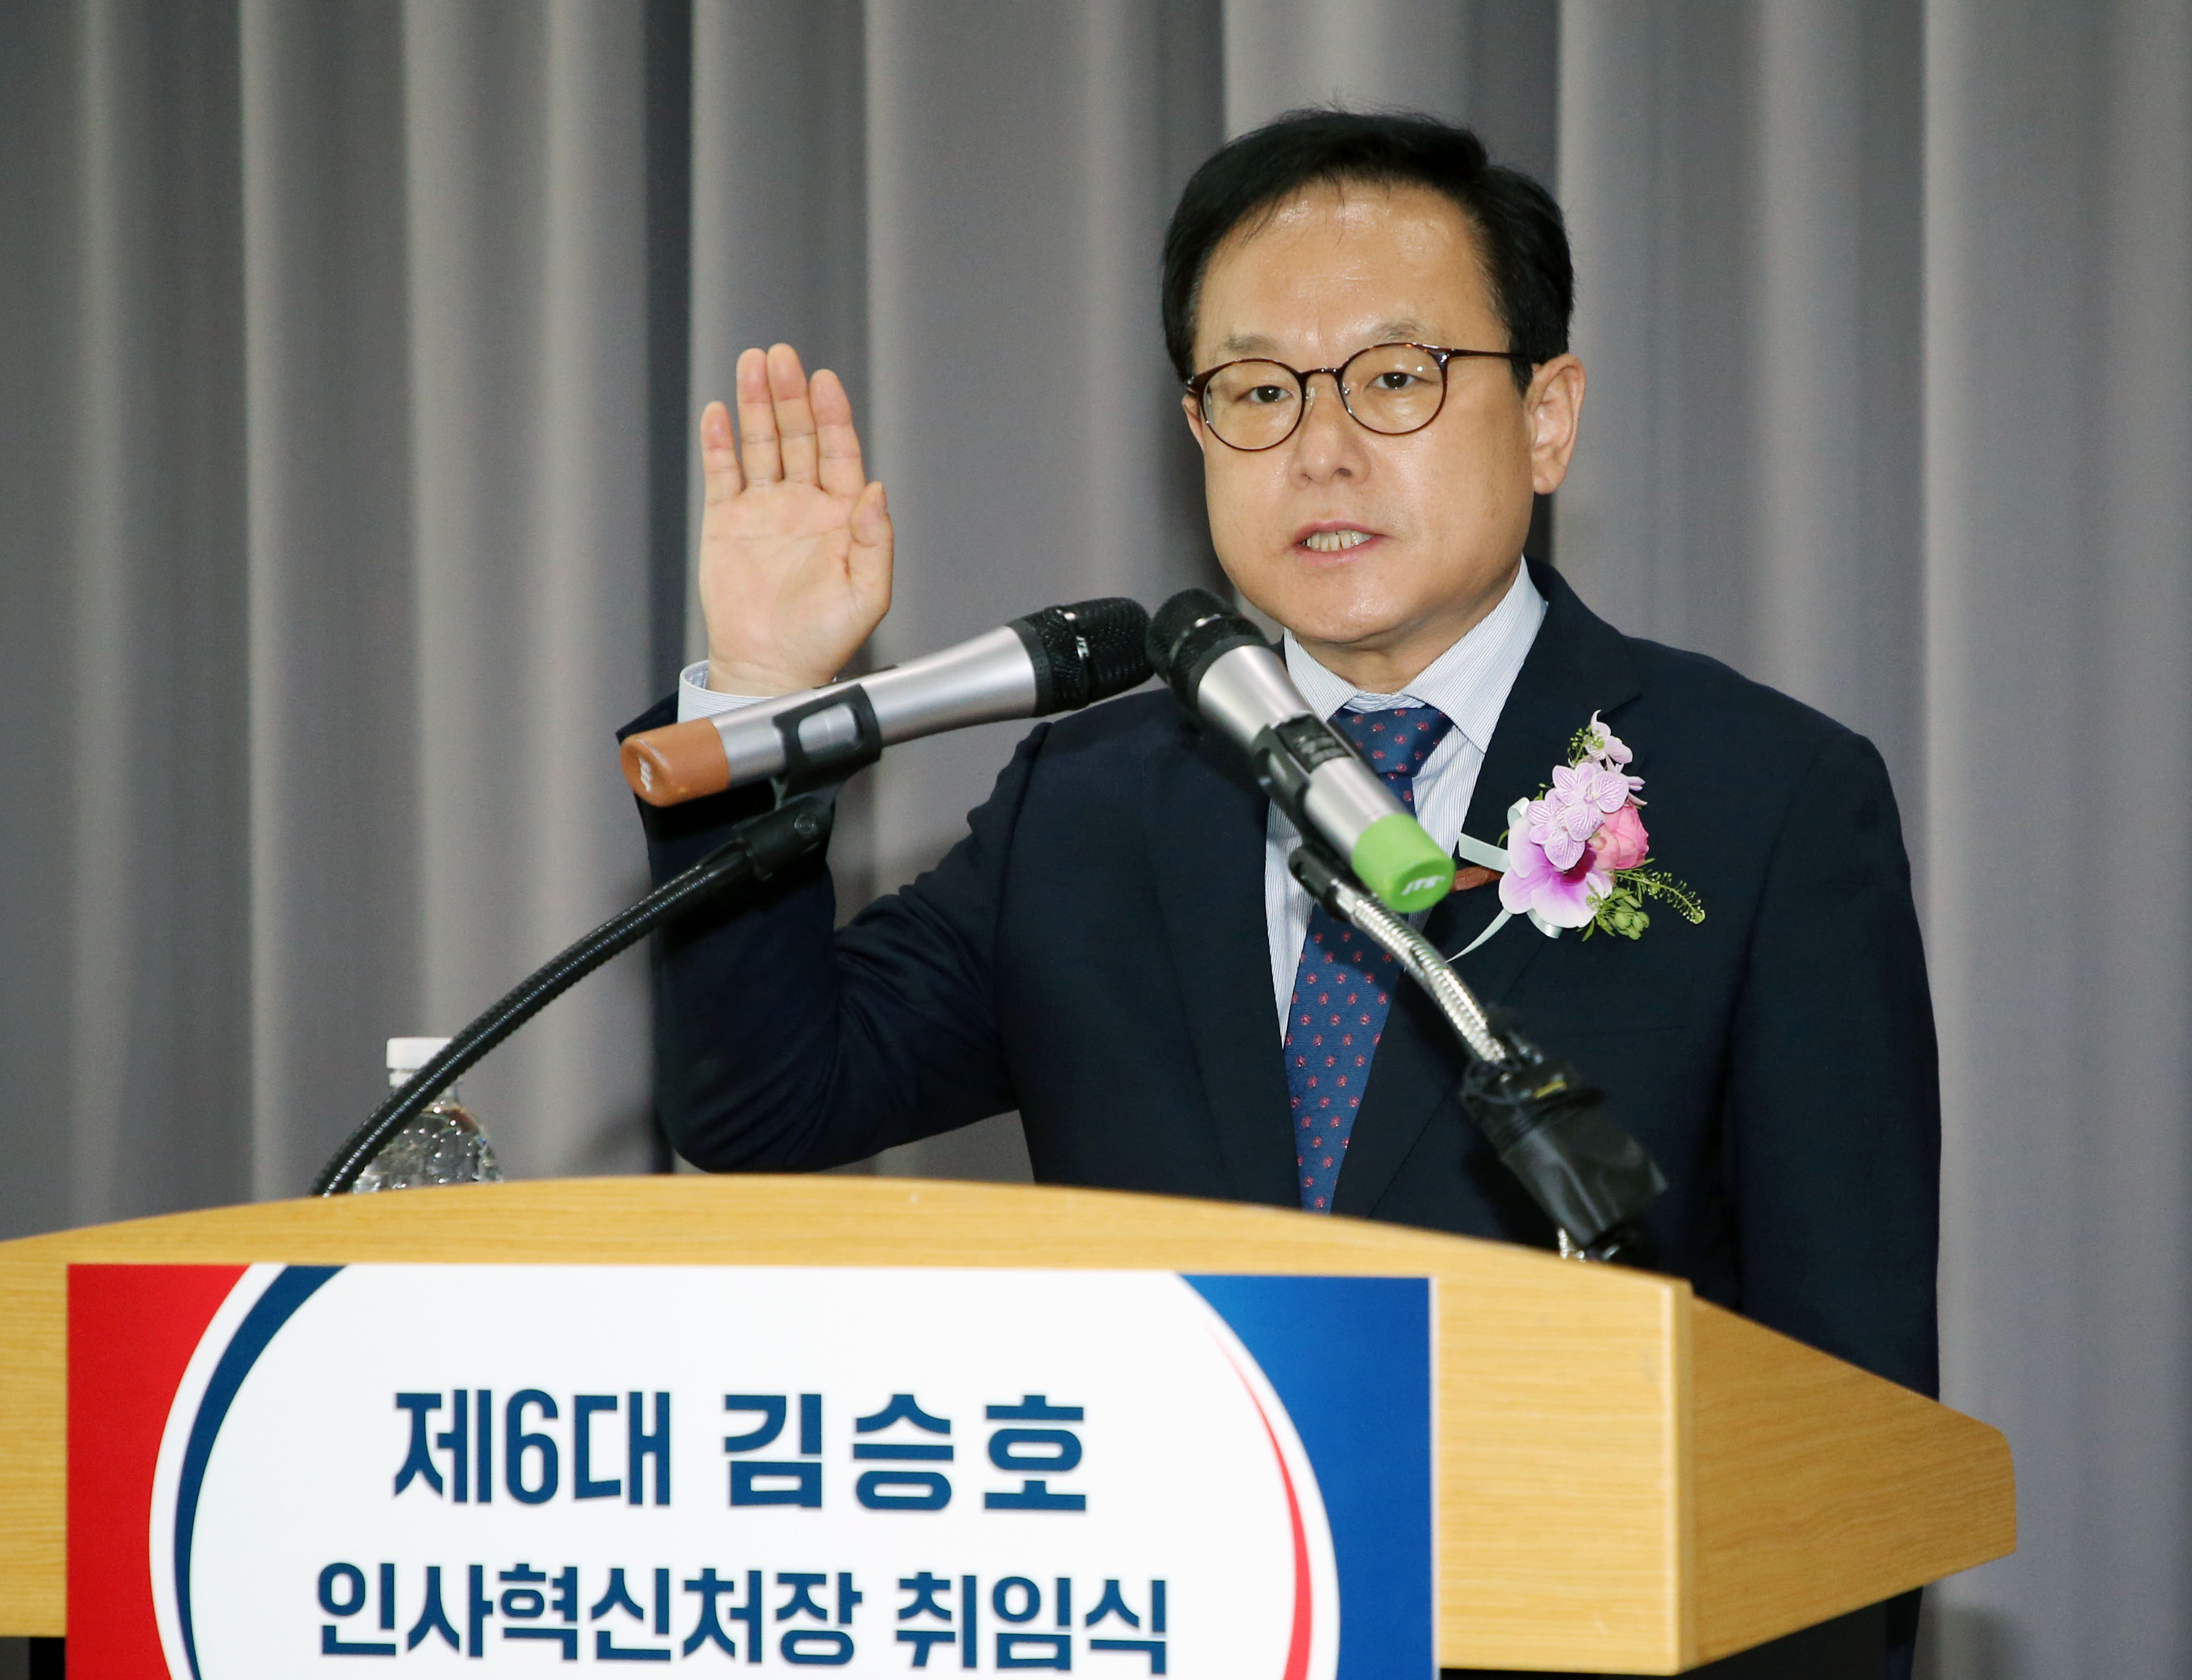 김승호 신임 인사혁신처장이 13일 인사혁신처에서 열린 취임식에서 선서를 하는 모습